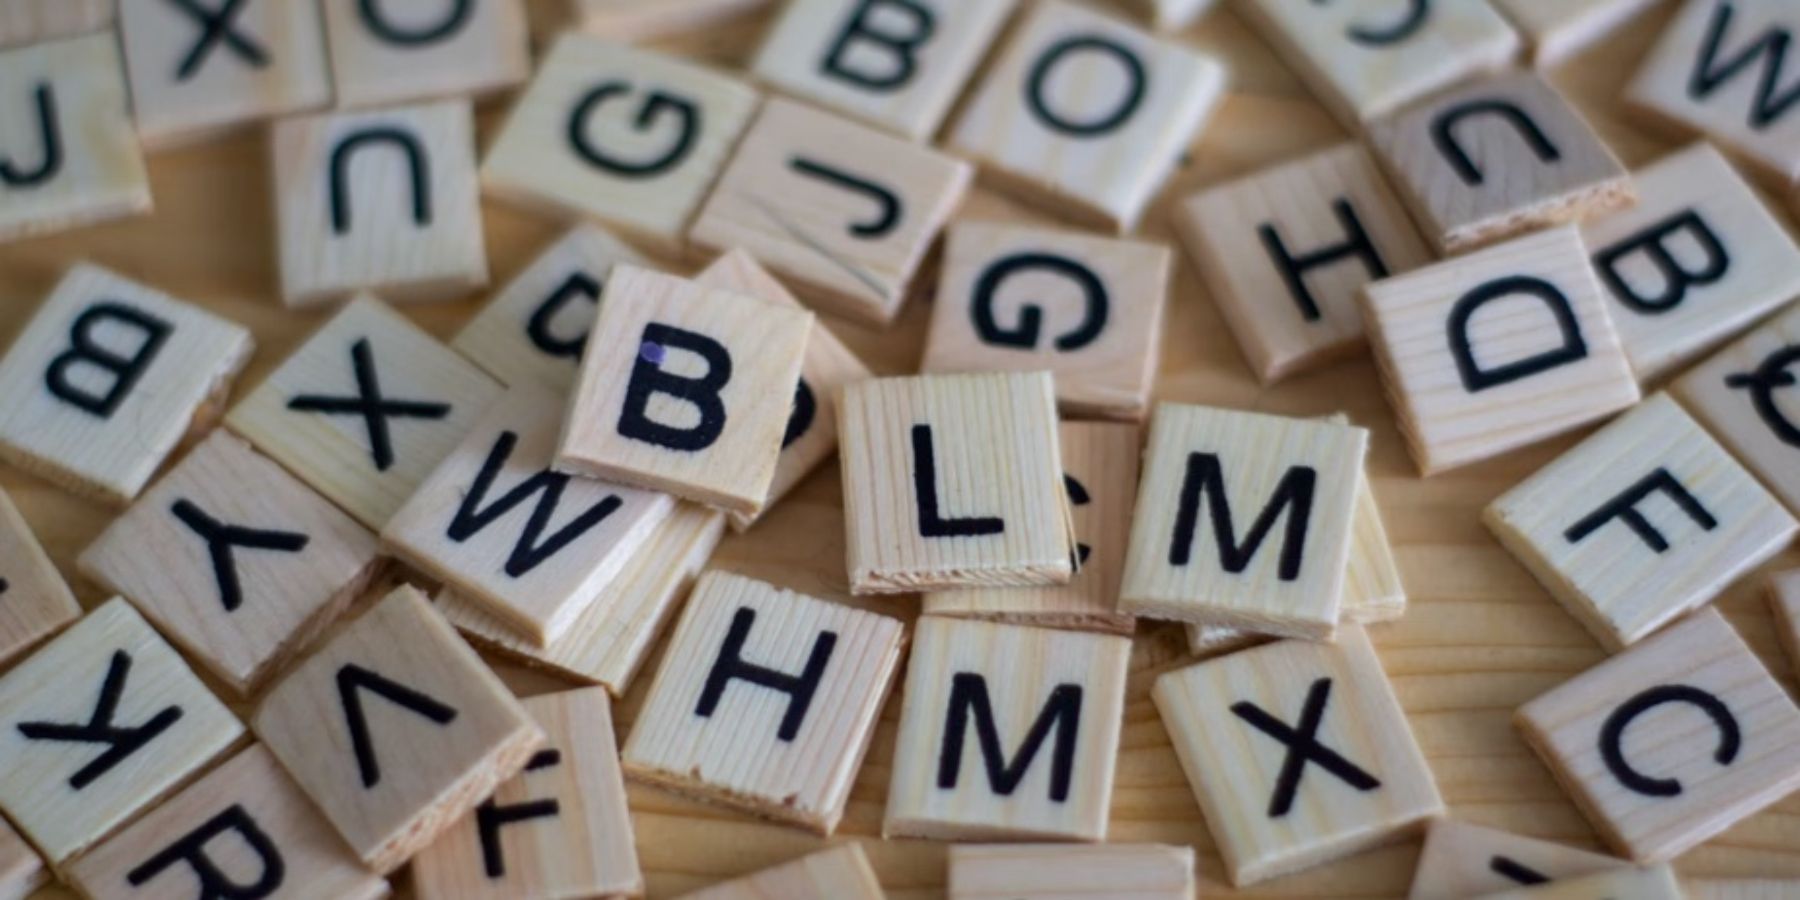 scrabble tiles letters words